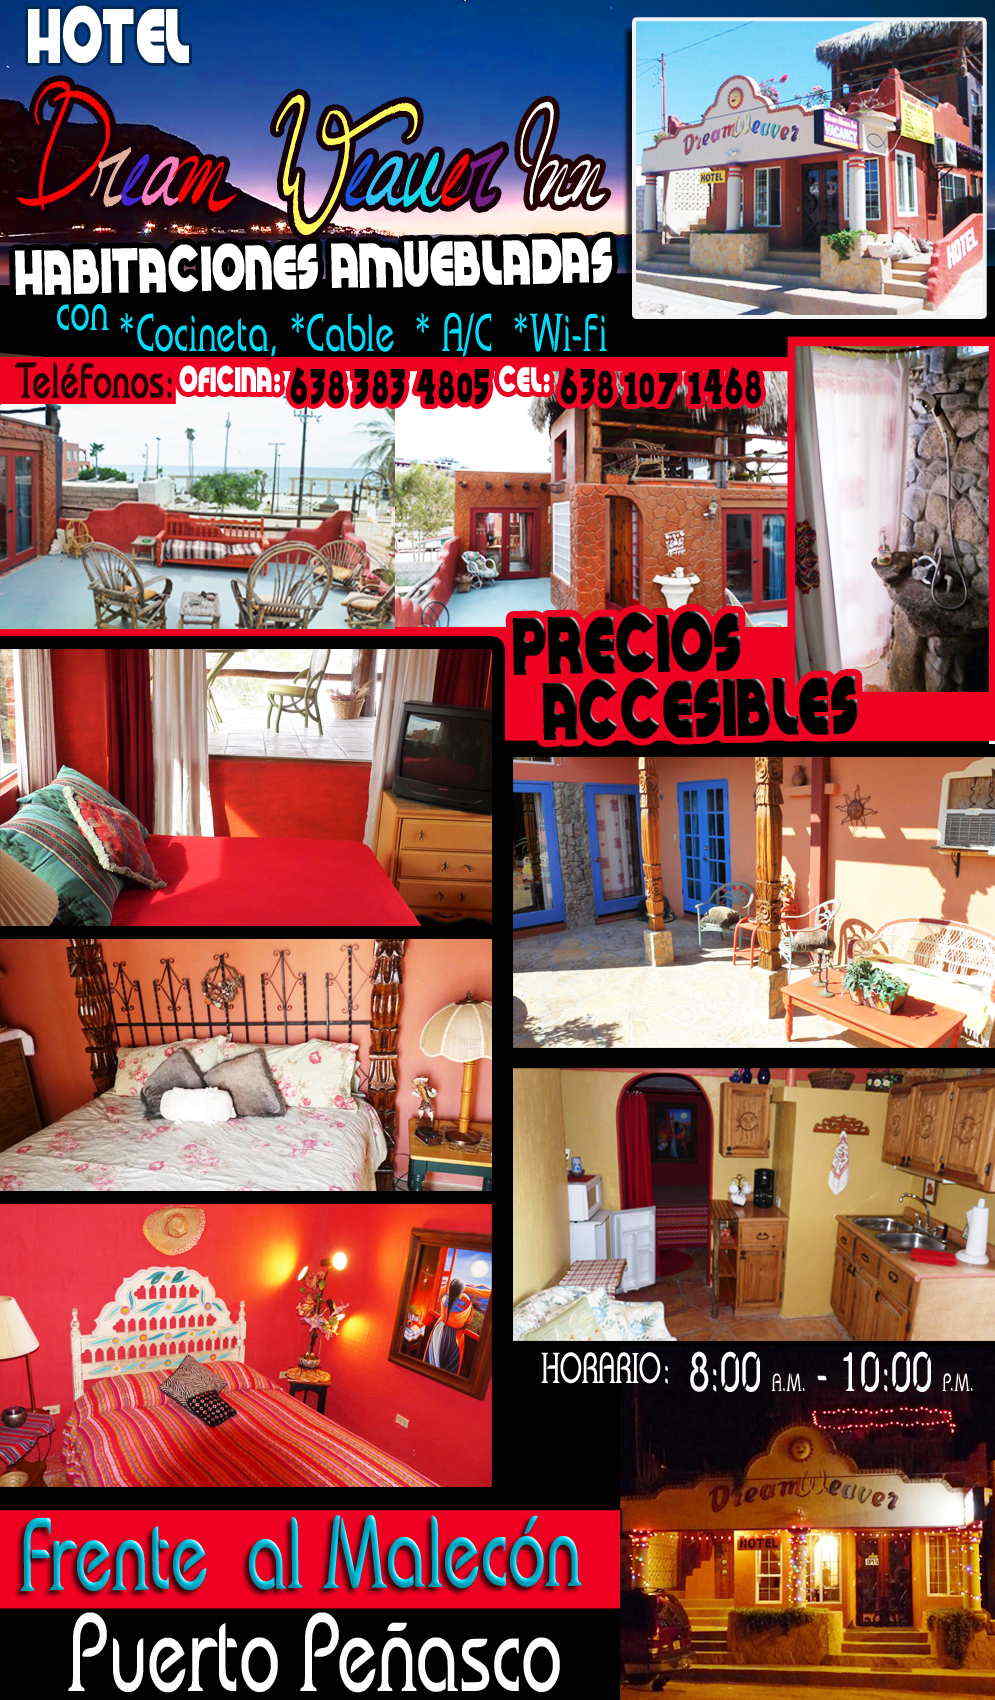 DREAM WEAVER INN-habitaciones amuebladas con cocineta, cable a/c, wifi frente al malecon precios accesibles            